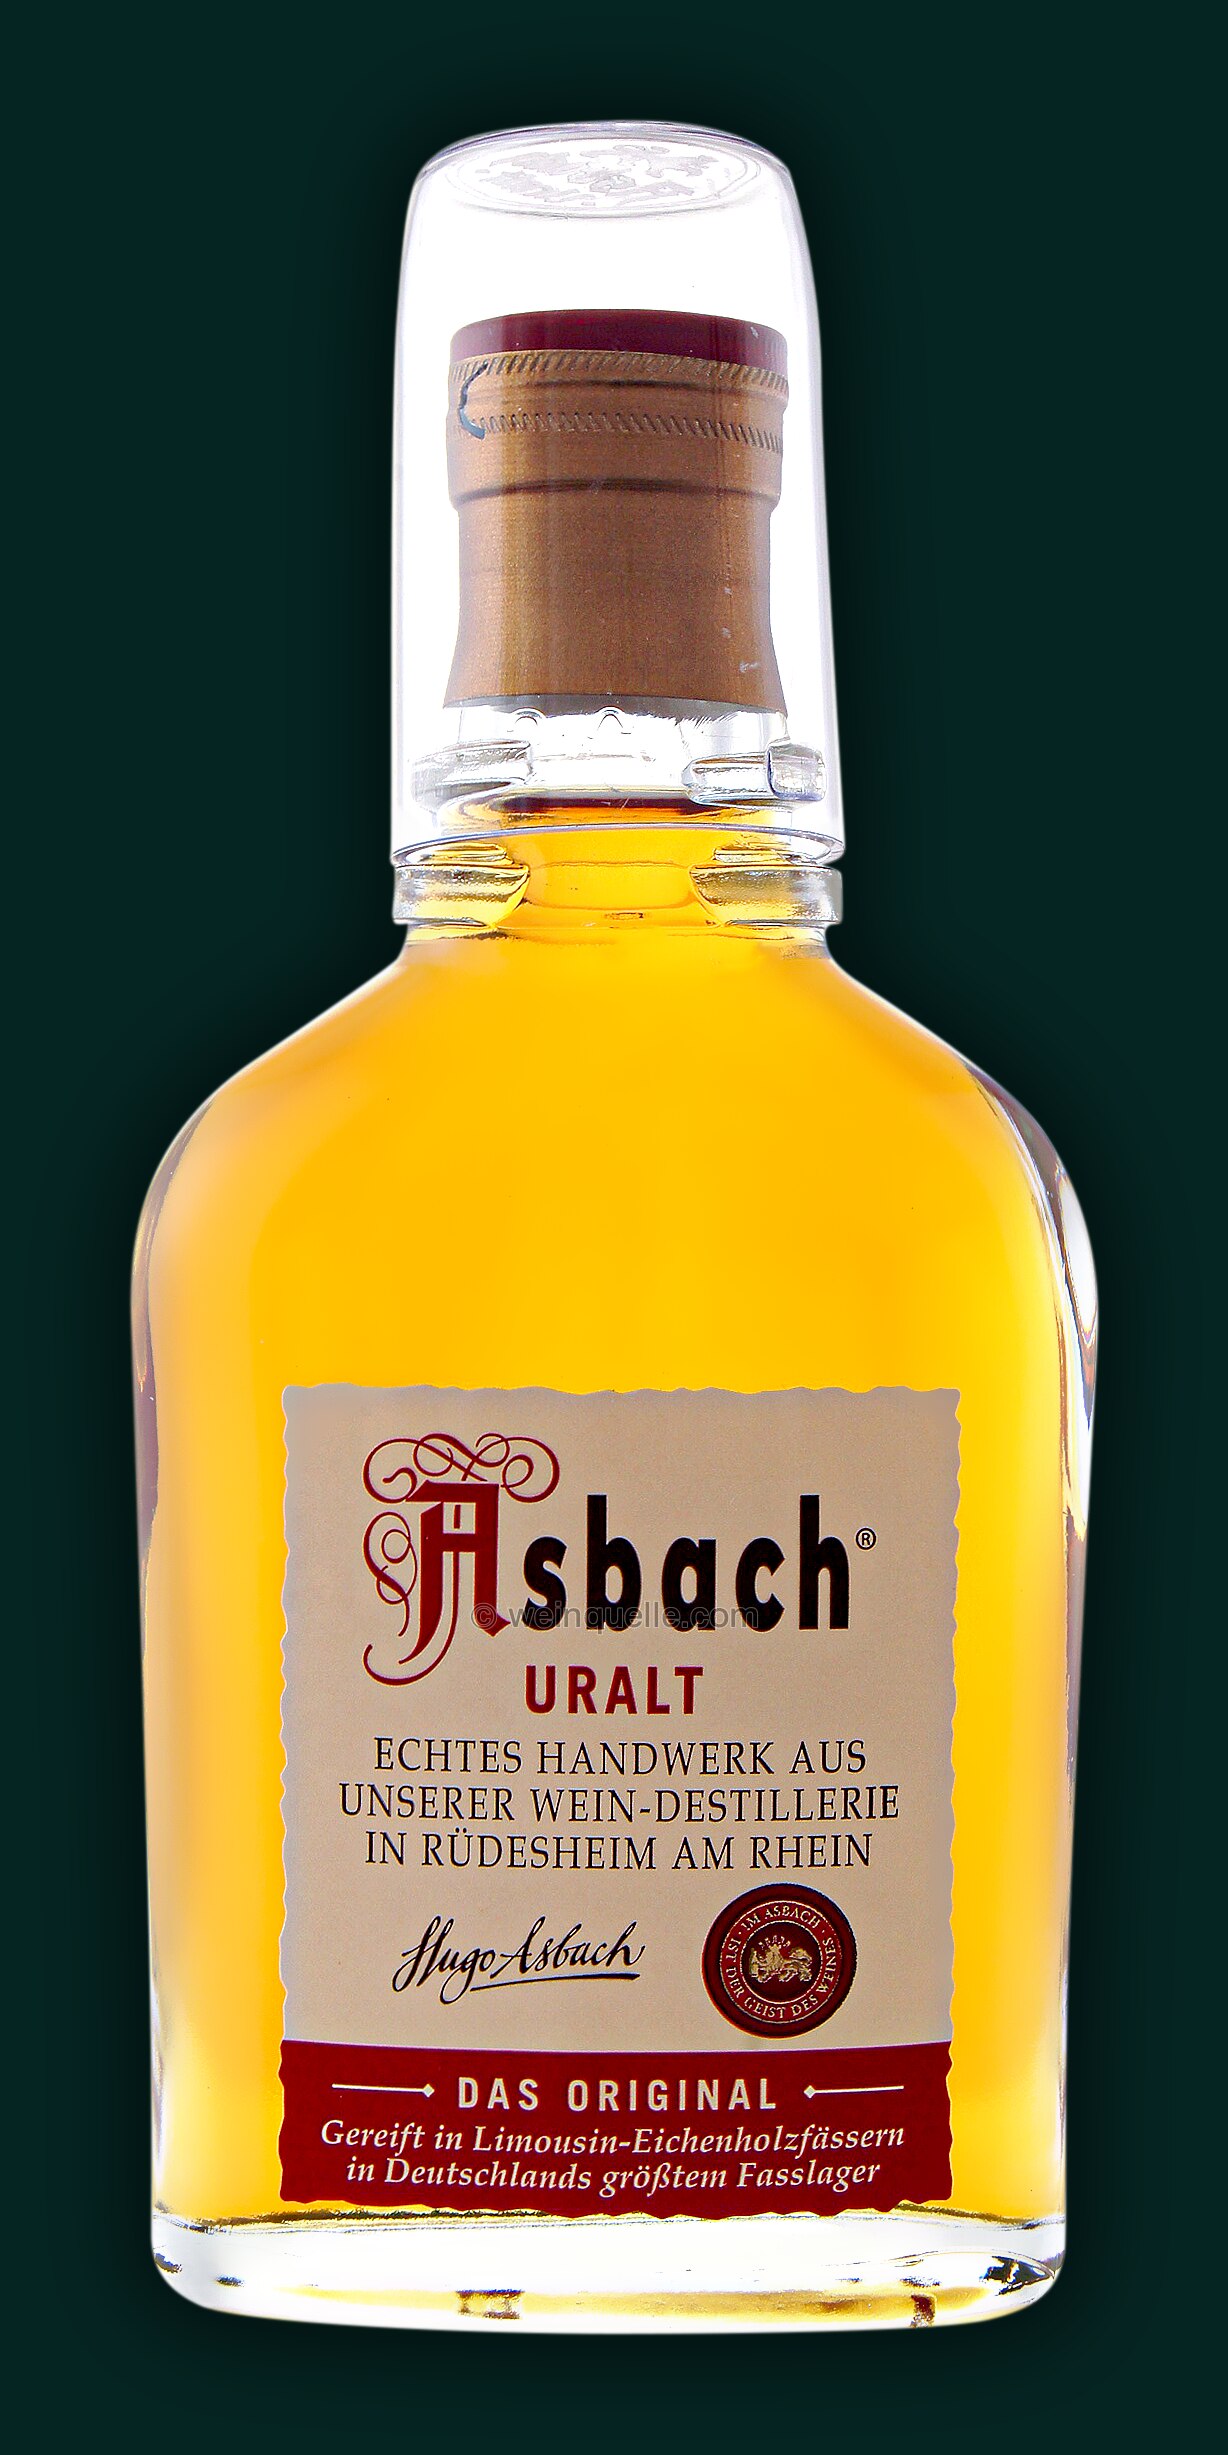 Asbach Uralt 0,1 € - 2,95 Weinquelle Liter, Lühmann